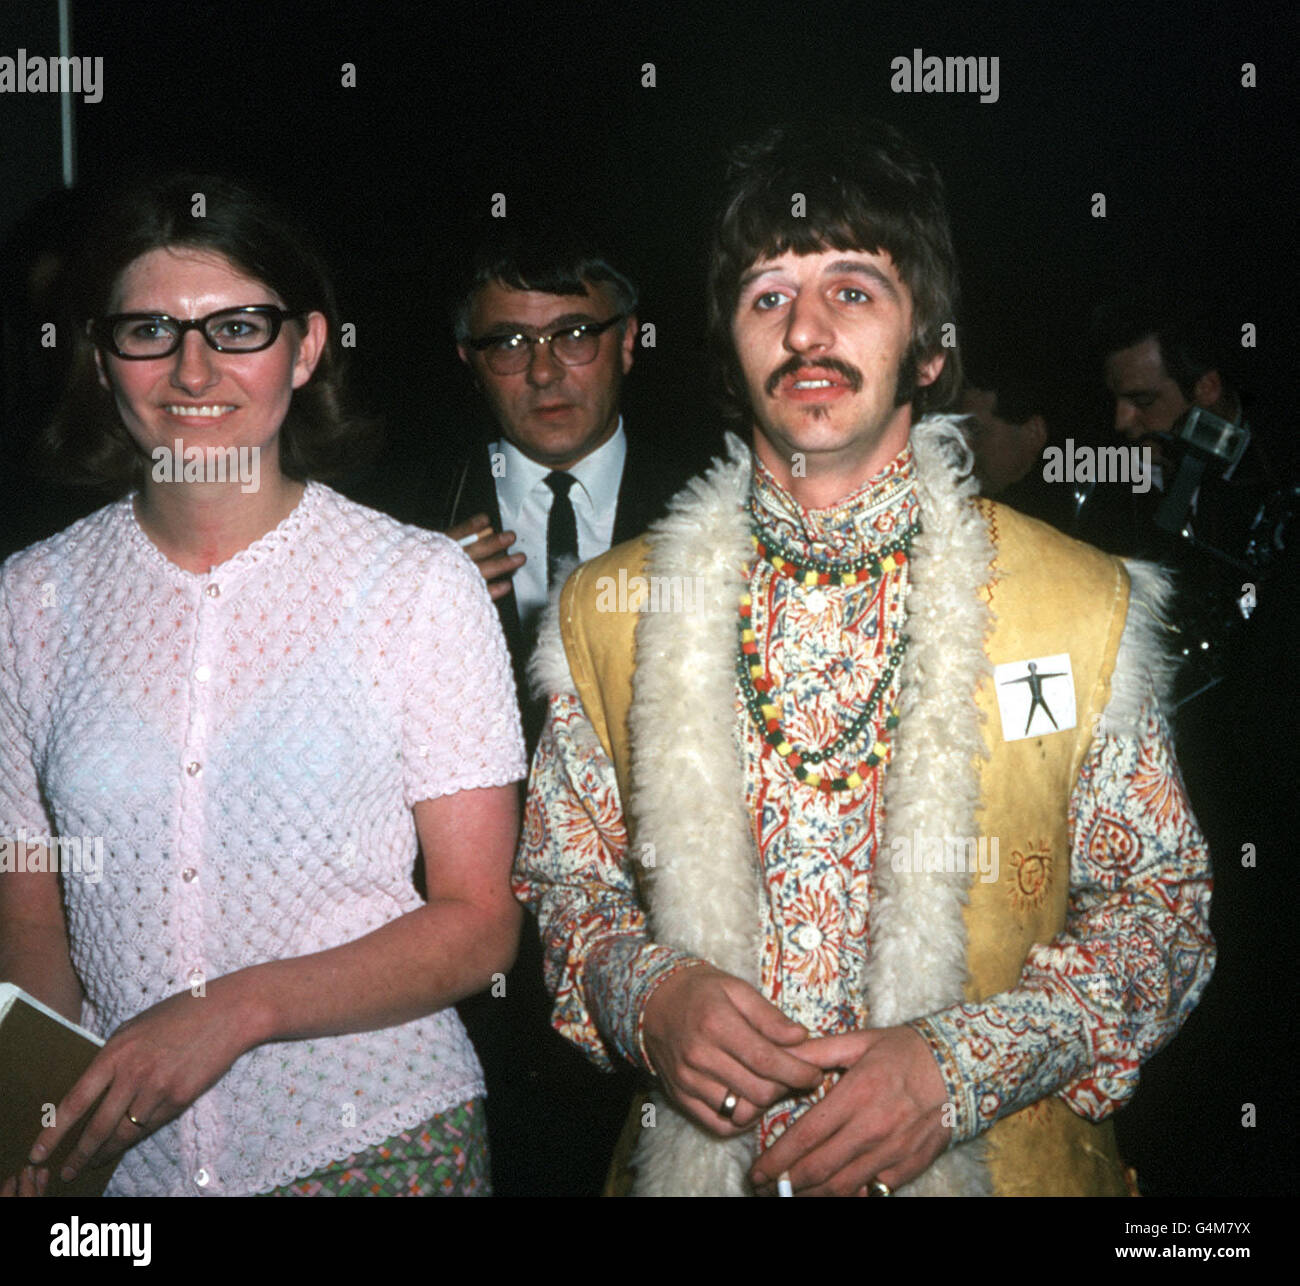 Musique - The Beatles - Ringo Starr - Londres Banque D'Images